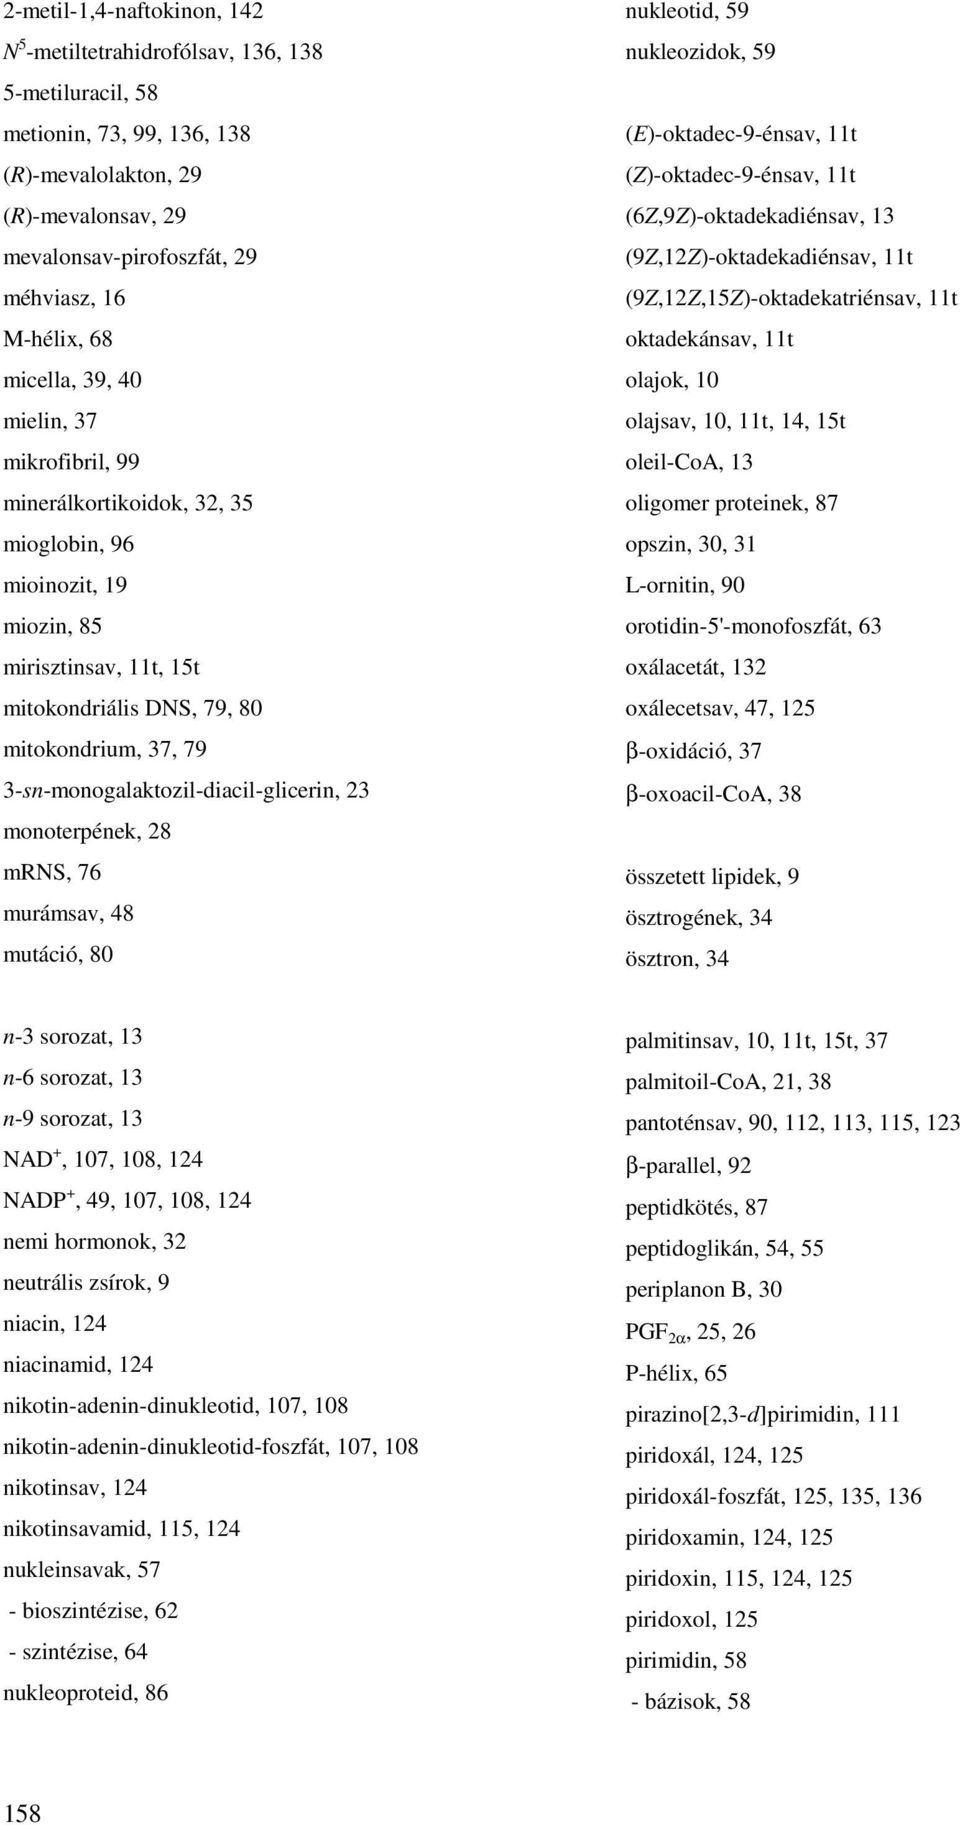 3-sn-monogalaktozil-diacil-glicerin, 23 monoterpének, 28 mrns, 76 murámsav, 48 mutáció, 80 nukleotid, 59 nukleozidok, 59 (E)-oktadec-9-énsav, 11t (Z)-oktadec-9-énsav, 11t (6Z,9Z)-oktadekadiénsav, 13